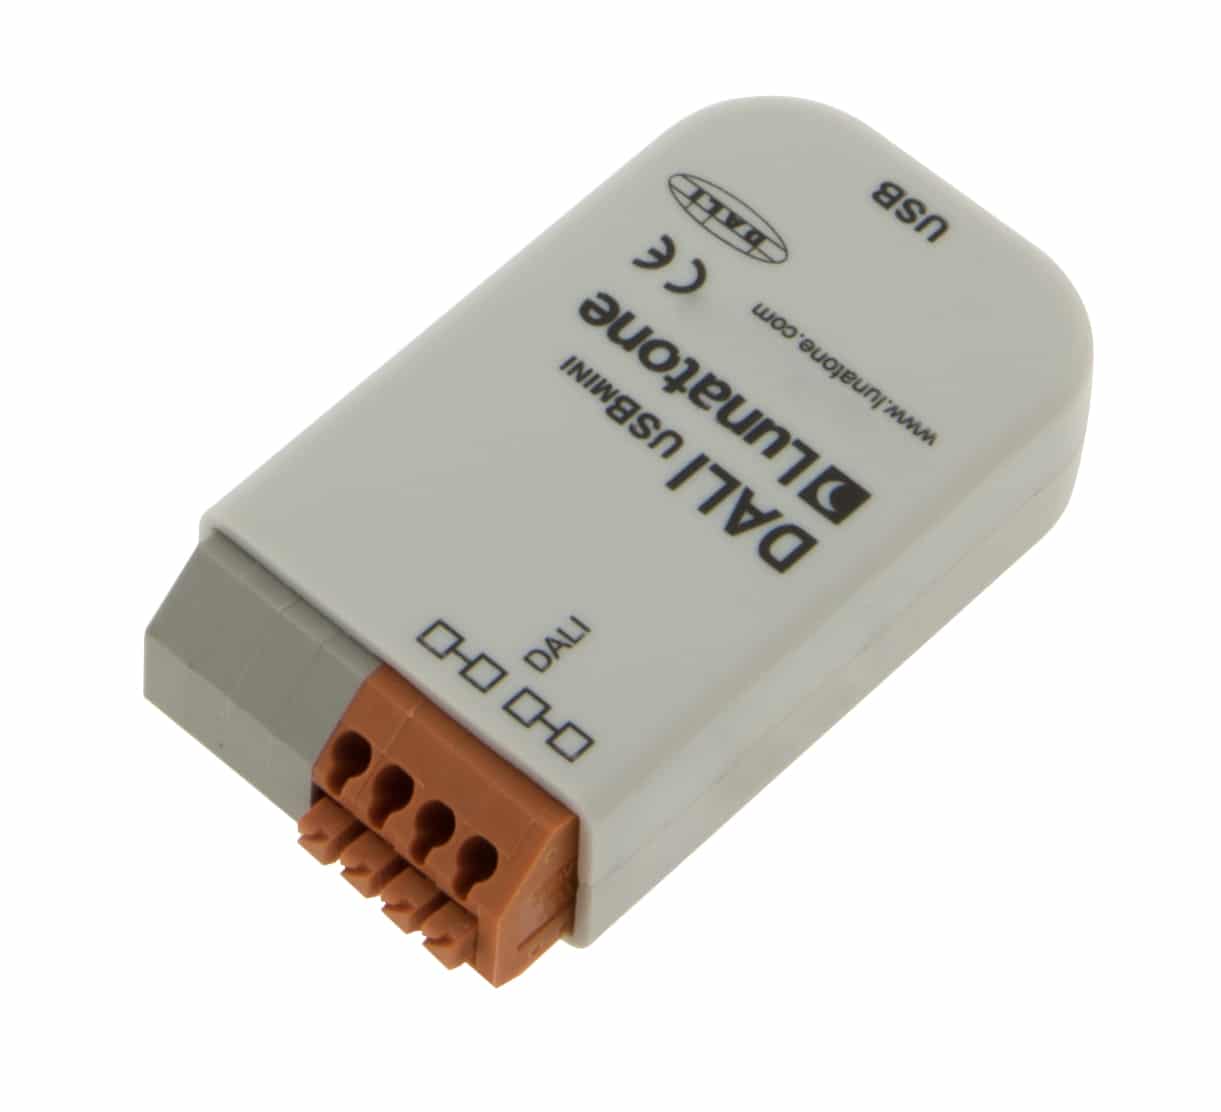 https://autled.com/daten/foto/Produktfoto_DALI-USB-Mini_2_v1.jpg